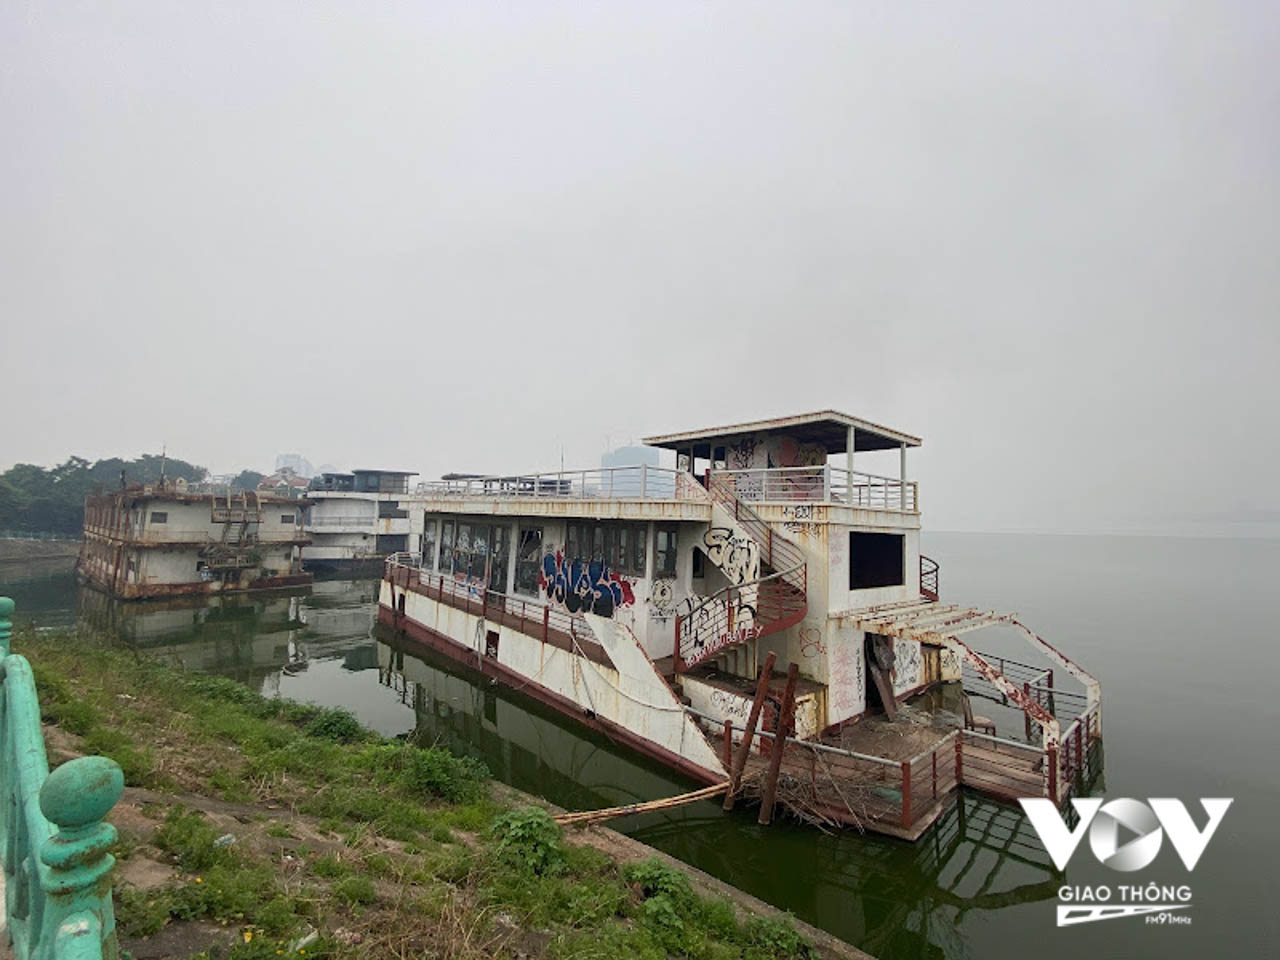 Sau 6 năm dừng hoạt động dịch vụ văn hóa, Hà Nội dự kiến cho phép nhiều loại hình kinh doanh mở lại ở hồ Tây